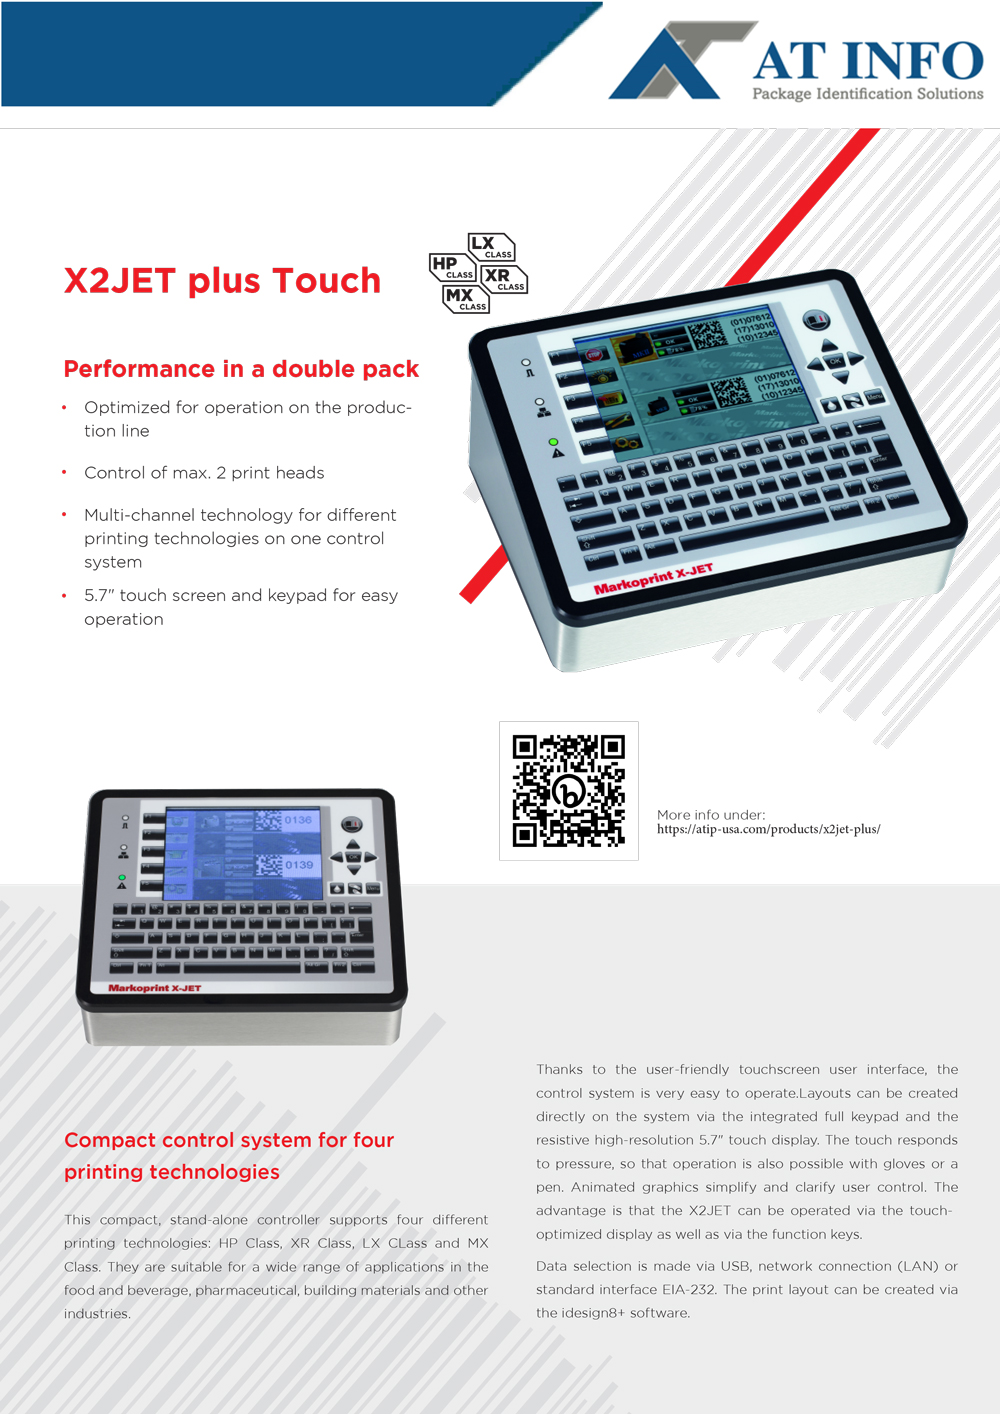 X2JET Plus Touch brochure